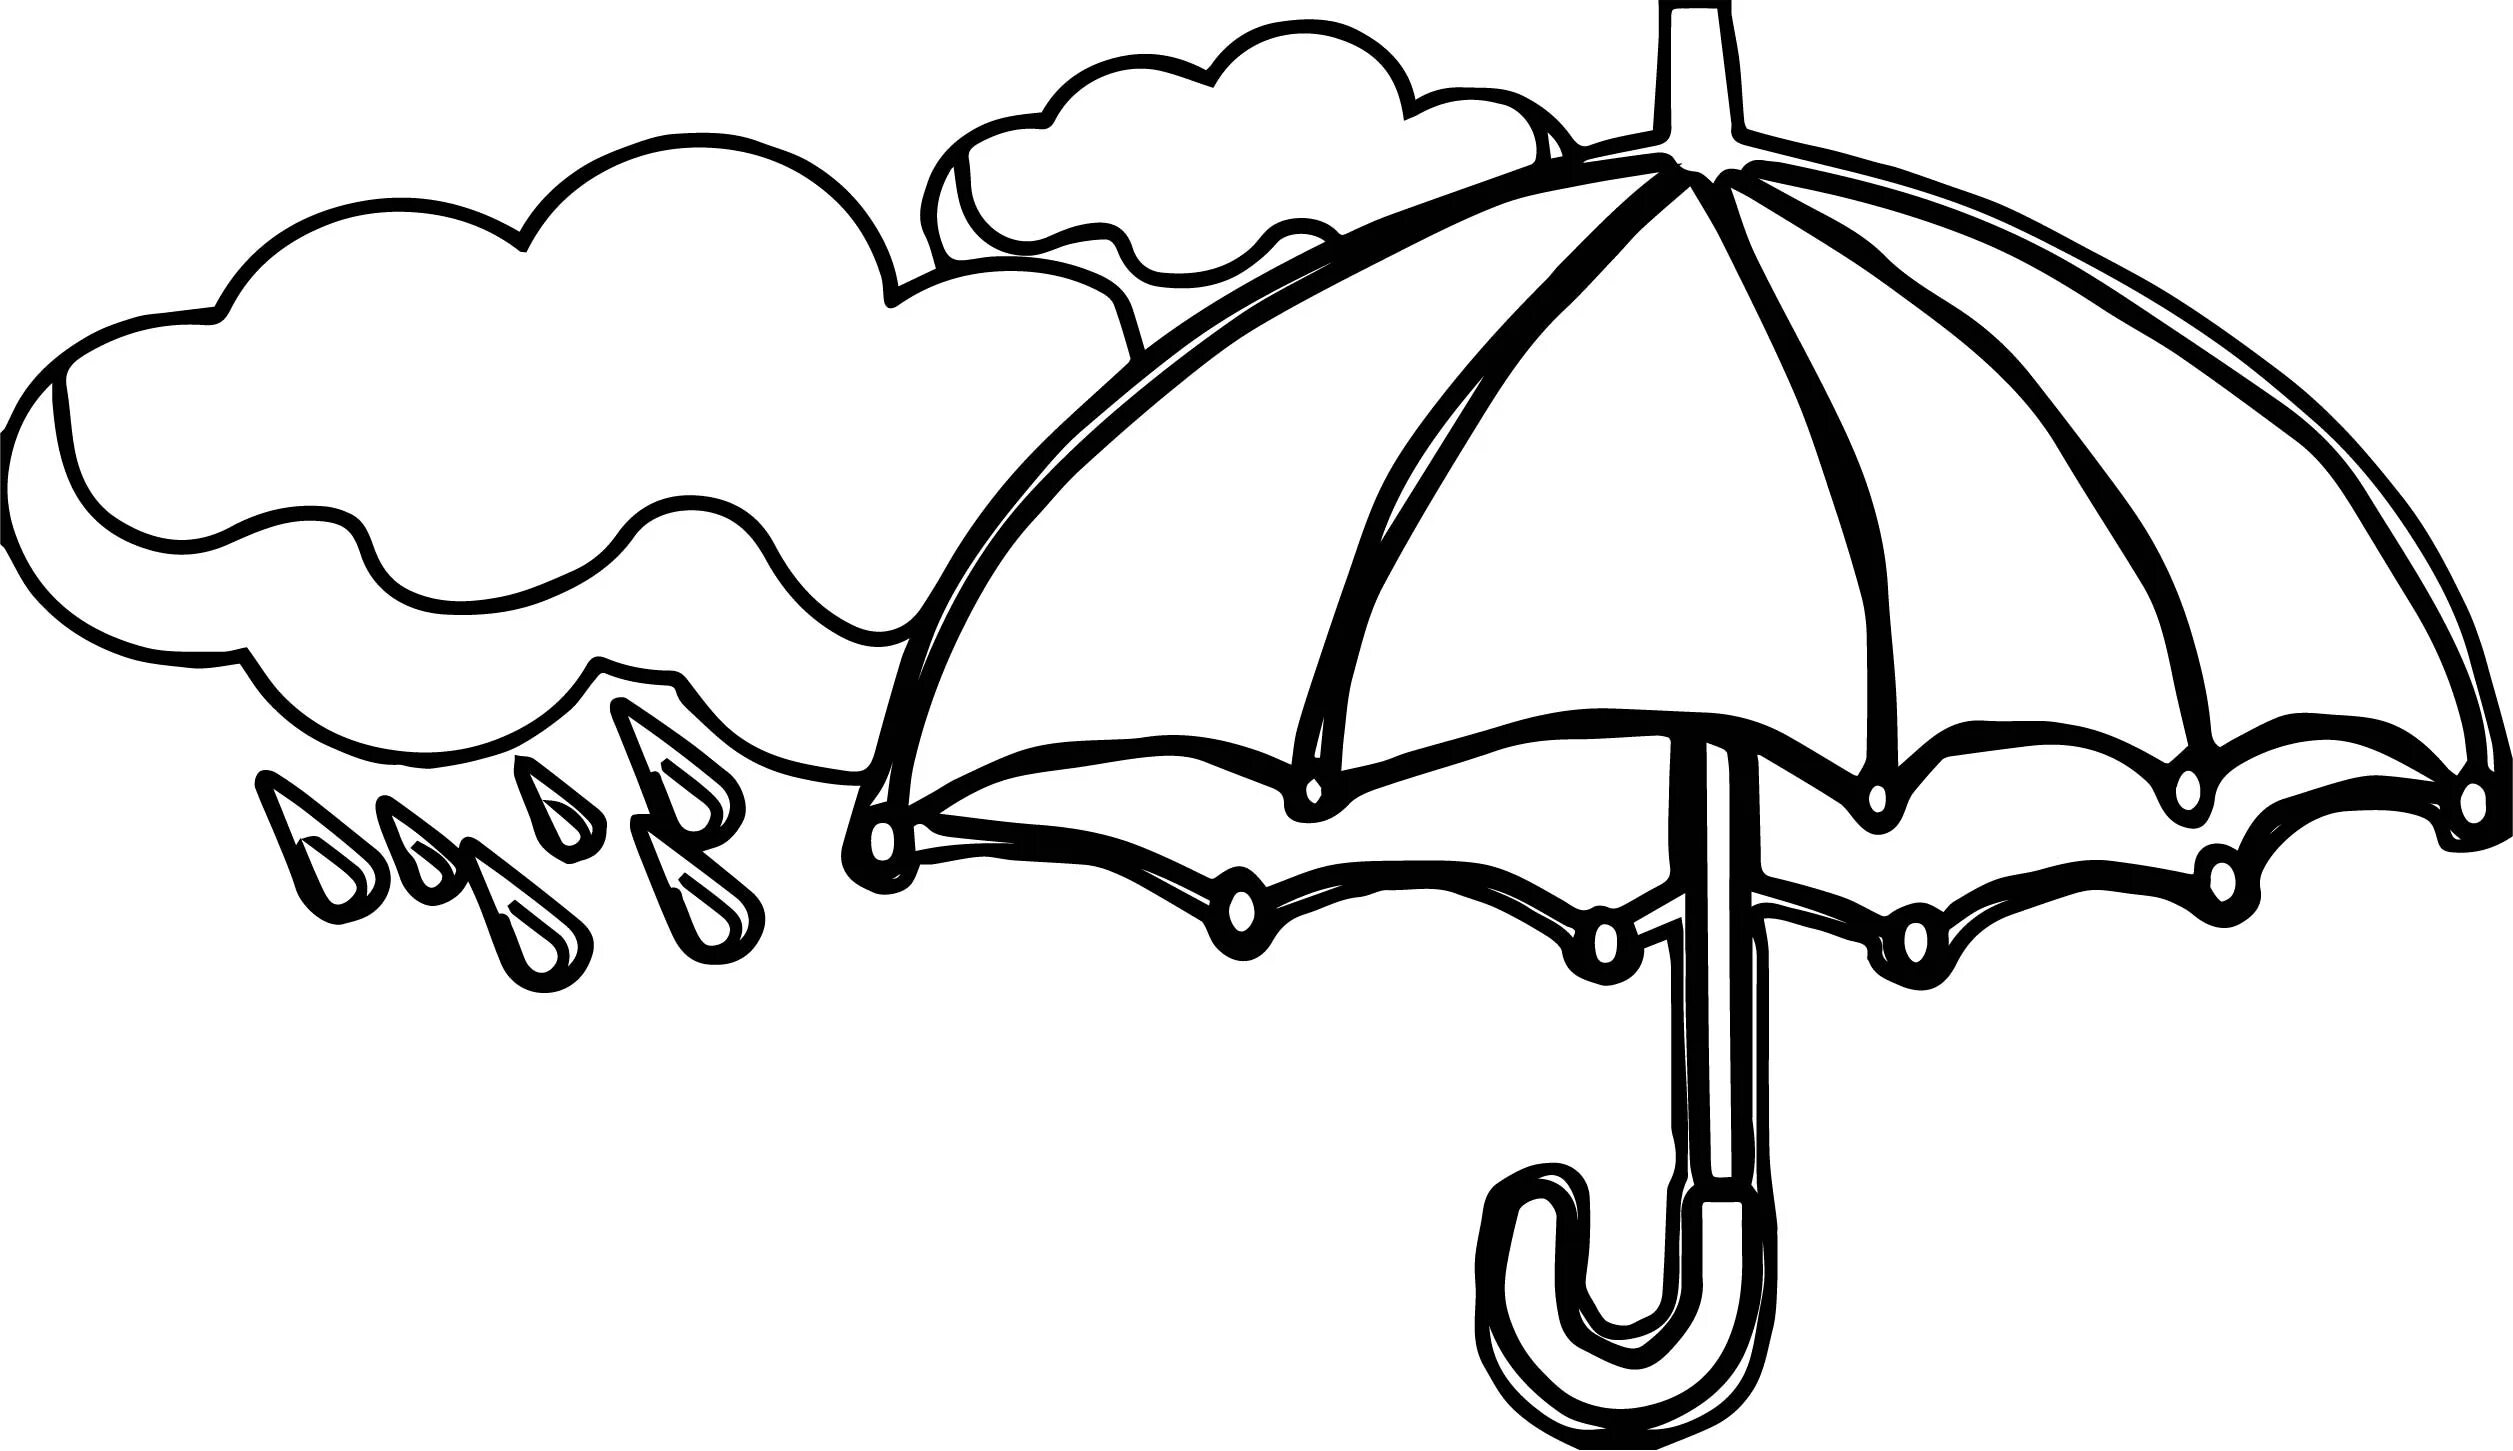 Распечатать зонтик. Раскраска зонтик. Зонт раскраска. Зонт раскраска для малышей. Раскраска для детей зогт.